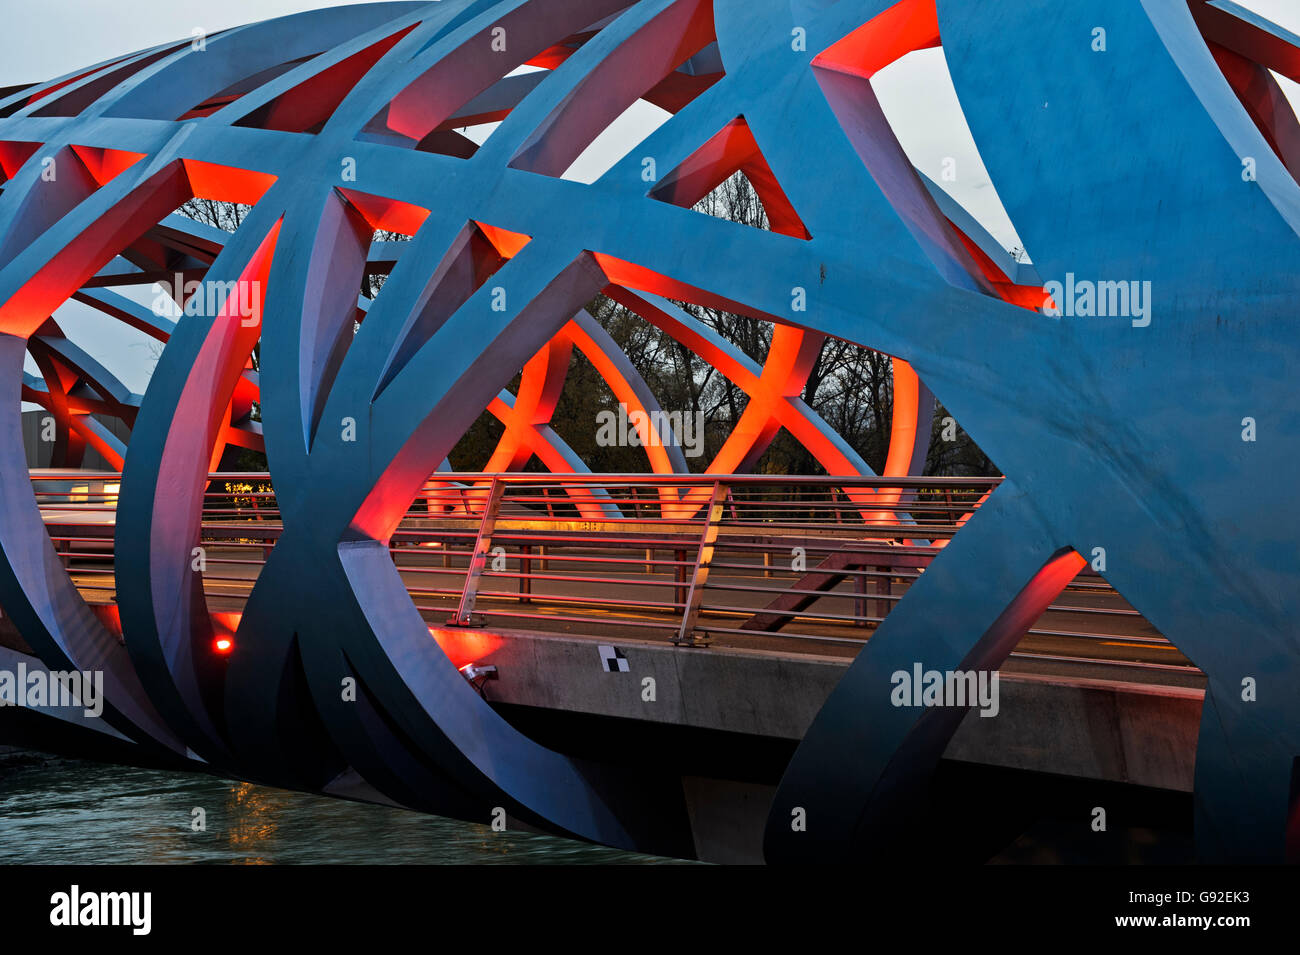 Les effets de lumière en forme de tube à la structure spatiale de l'Hans-Wilsdorf-bridge, Genève, Suisse Banque D'Images